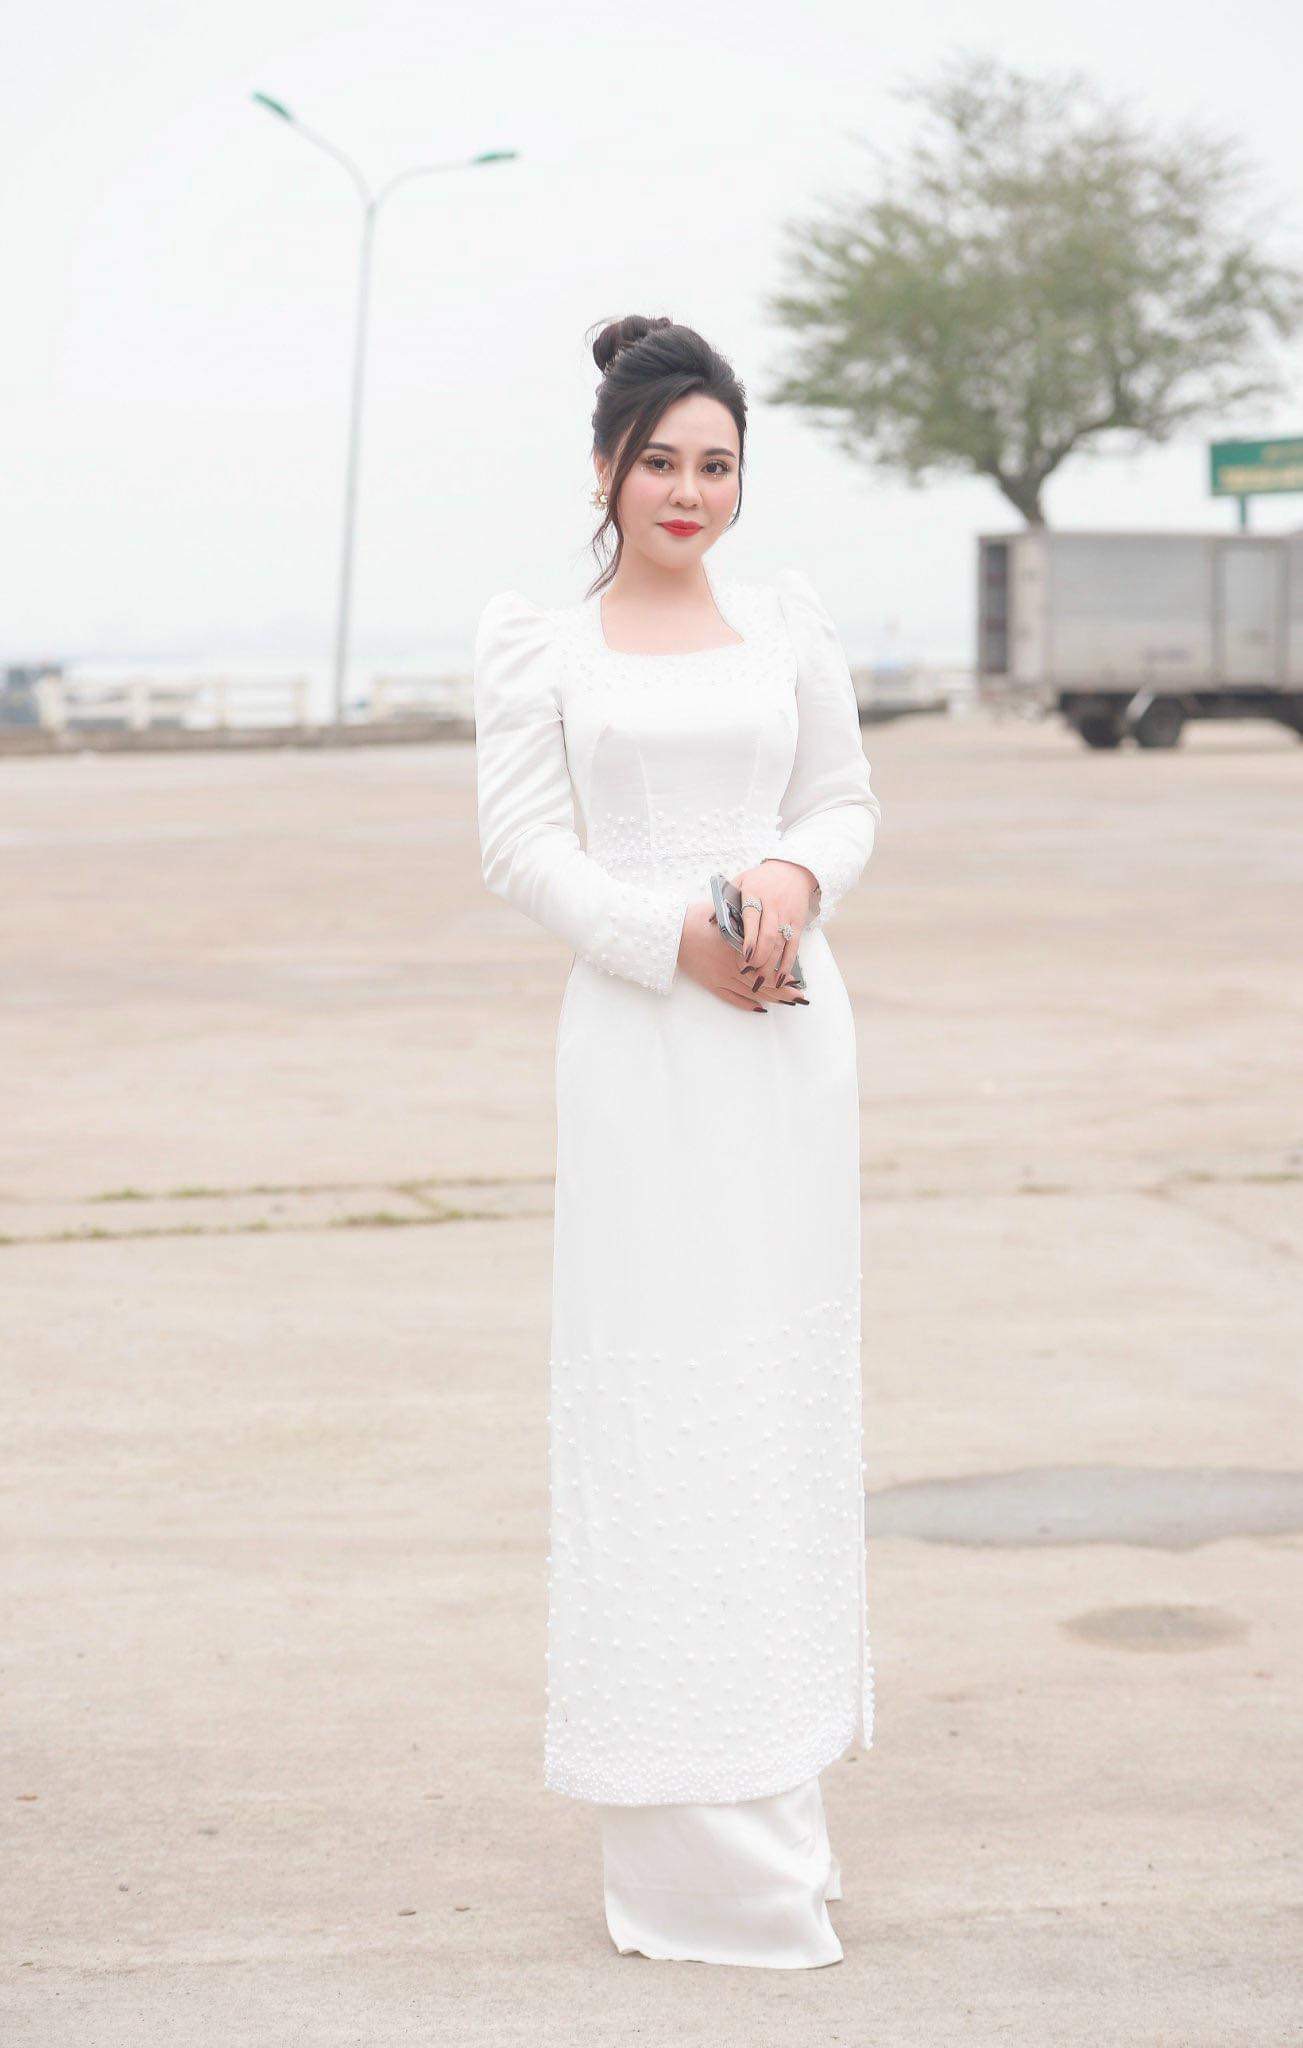 Hoa hậu Phan Kim Oanh dùng hết tiền cát xê để từ thiện - Ảnh 4.